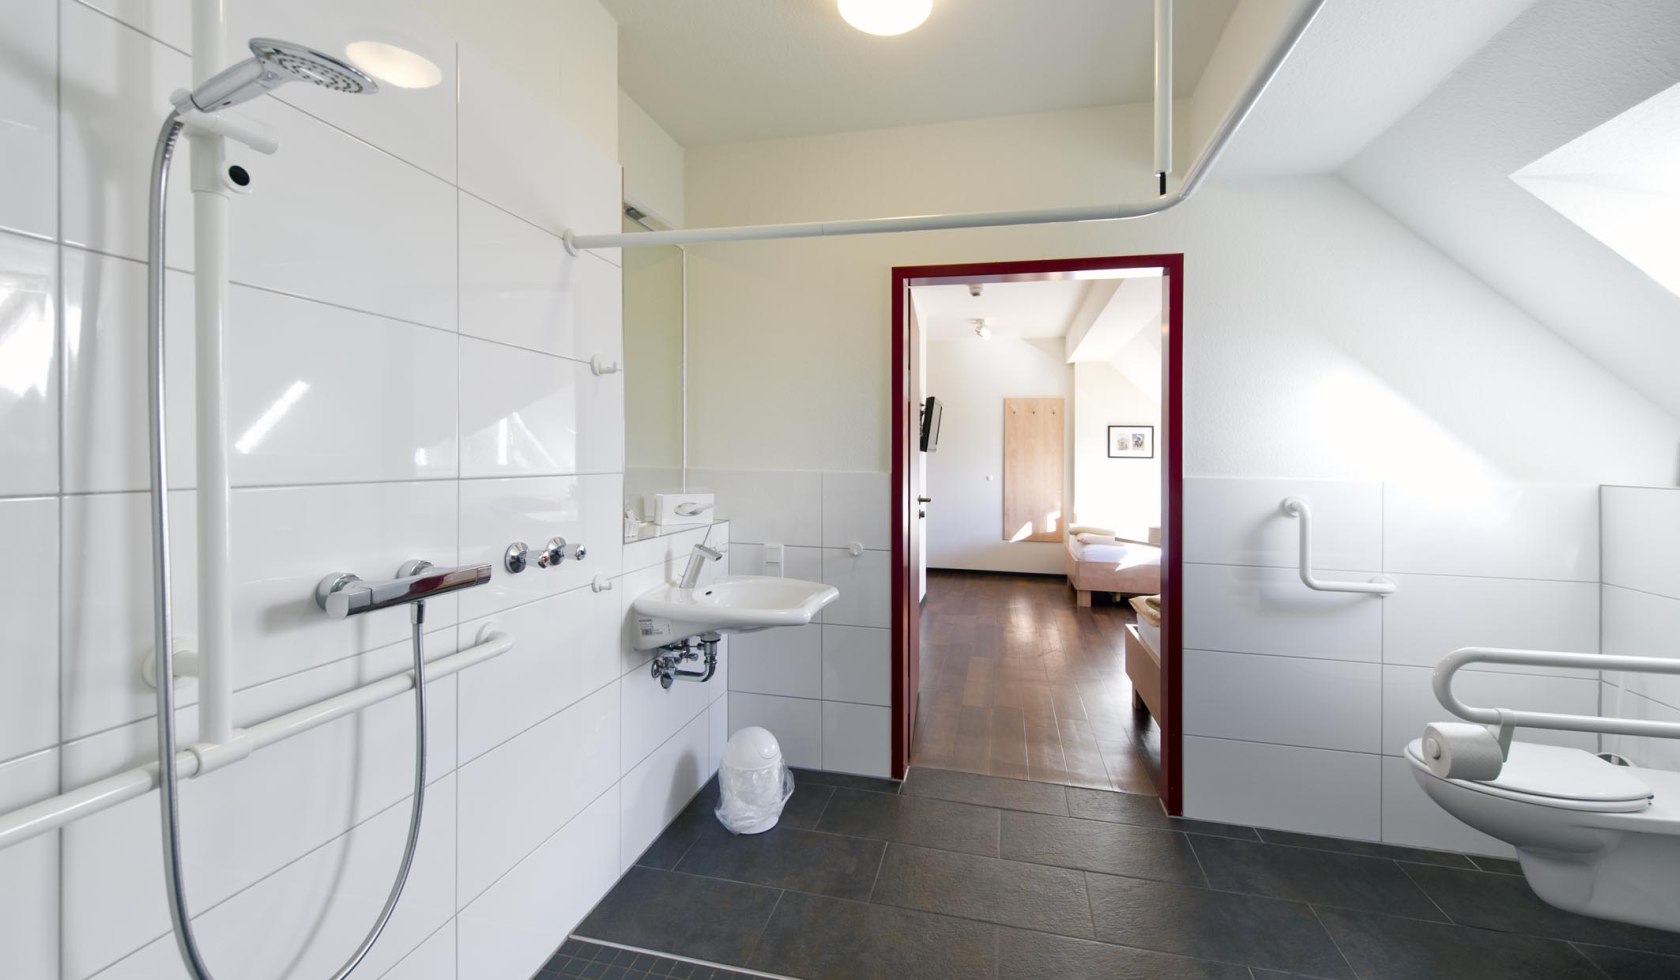 Zimmer mit Bad für Menschen mit Behinderung, © Caritas Gesundheitszentrum/ Bettina Meckel